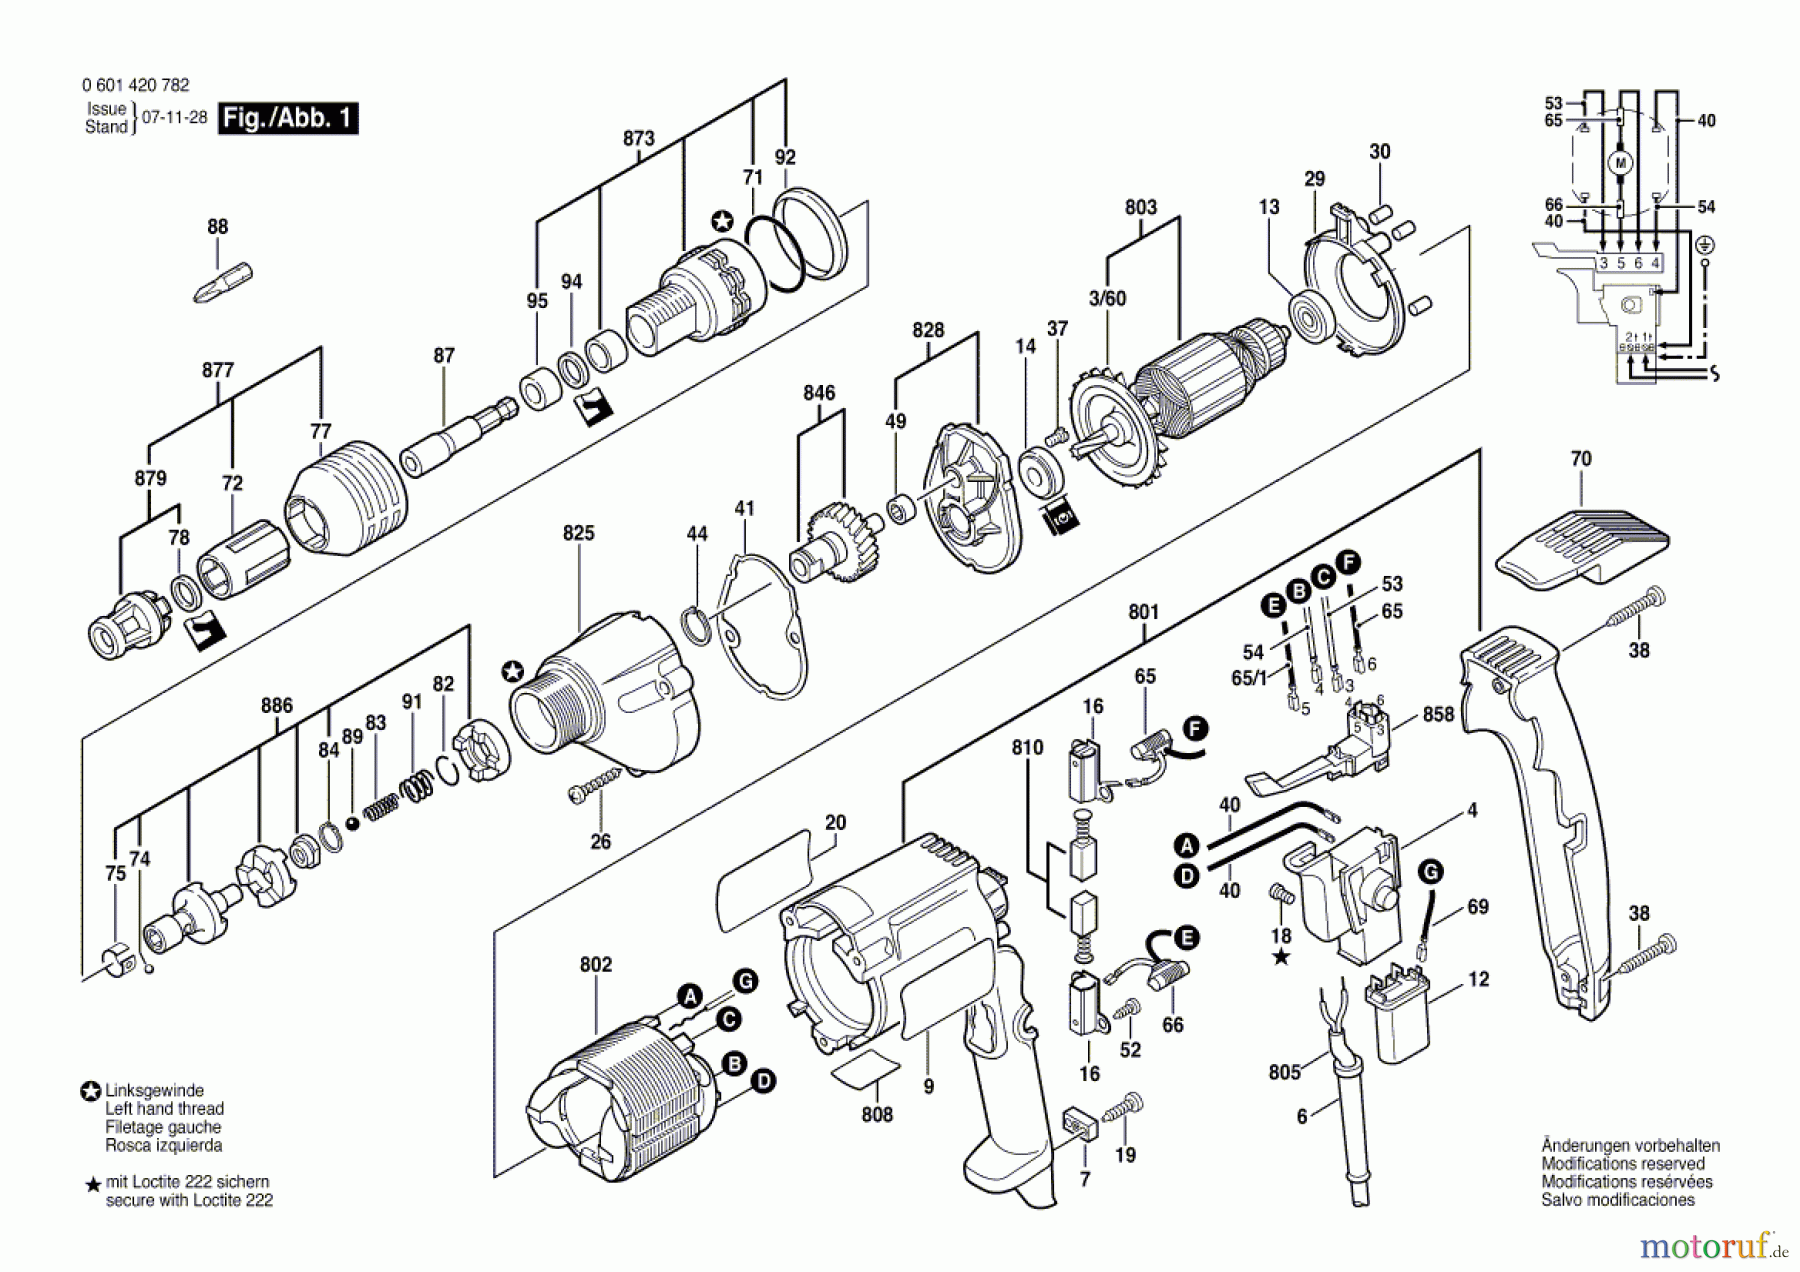  Bosch Werkzeug Bohrschrauber BDS-S Seite 1